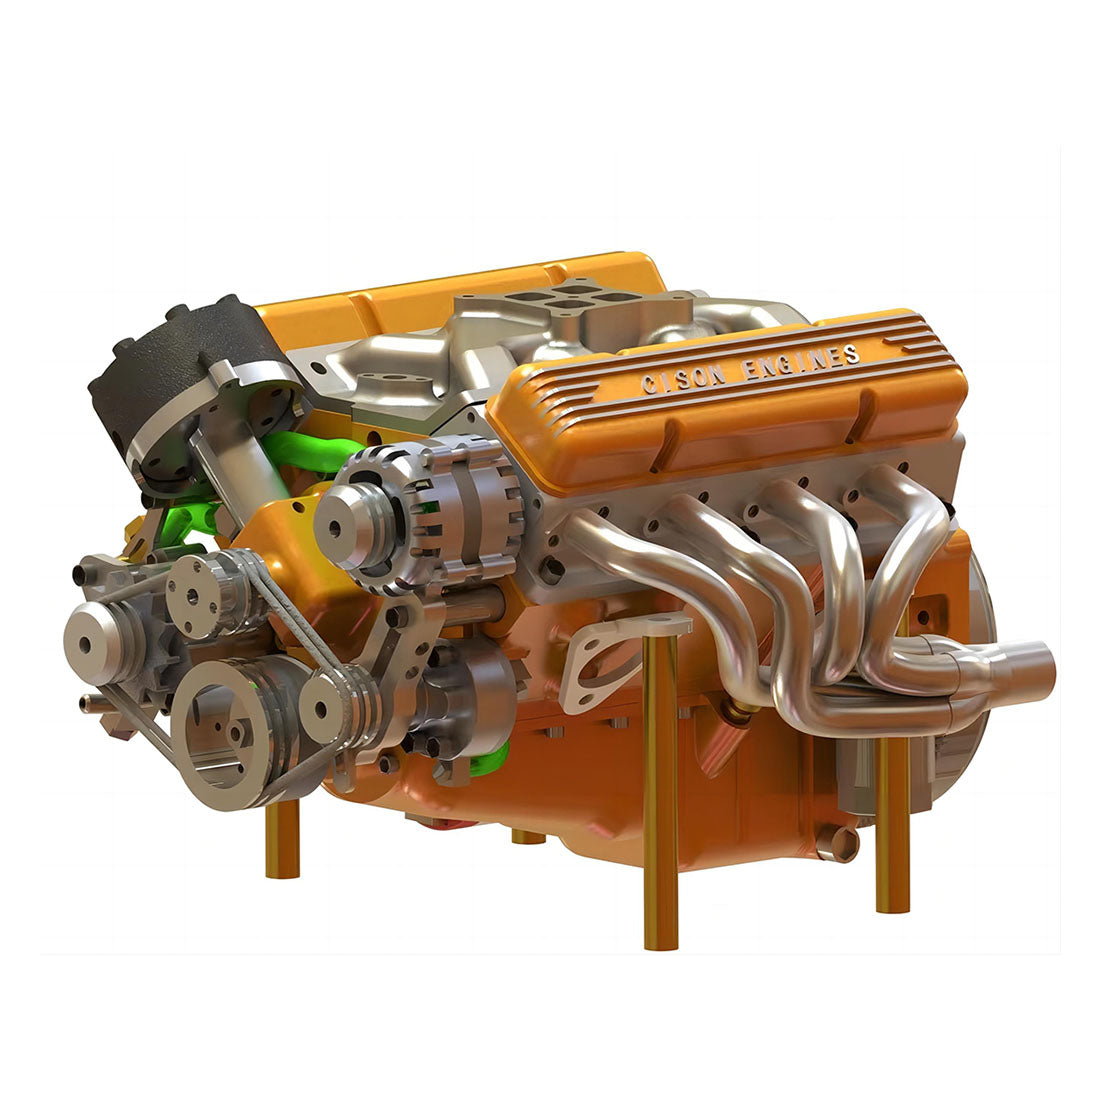 CISON Gasoline OHV V8 Small-block Engine Model Kits 4-Stroke 44cc Wate